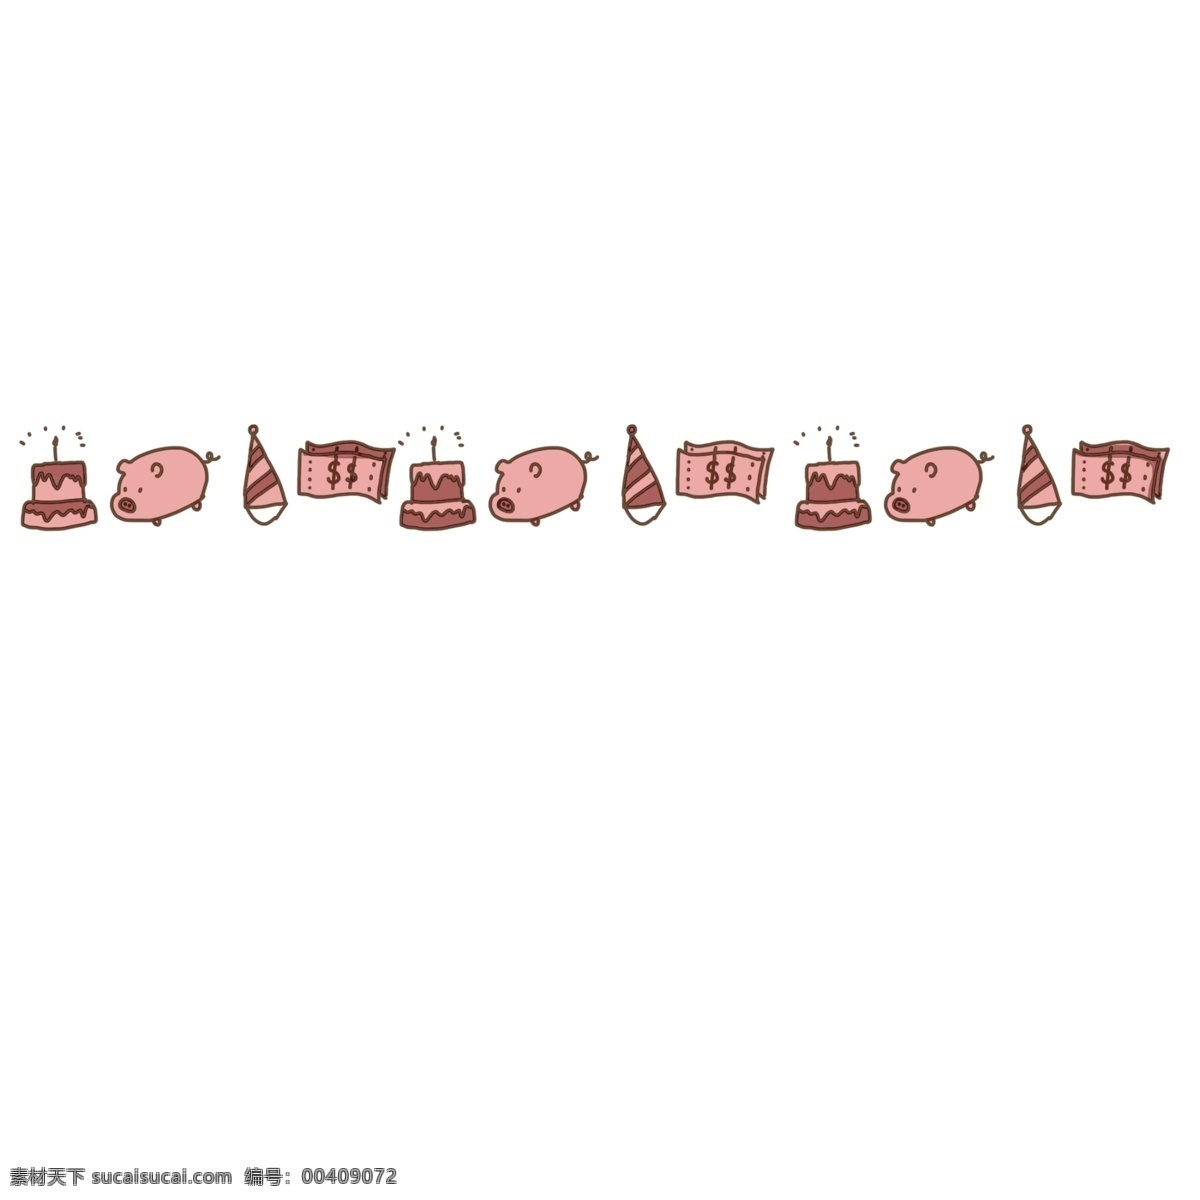 小 猪 蛋糕 分割线 装饰 粉色的小猪 小猪分割线 小动物分割线 可爱的分割线 蛋糕分割线 礼帽分割线